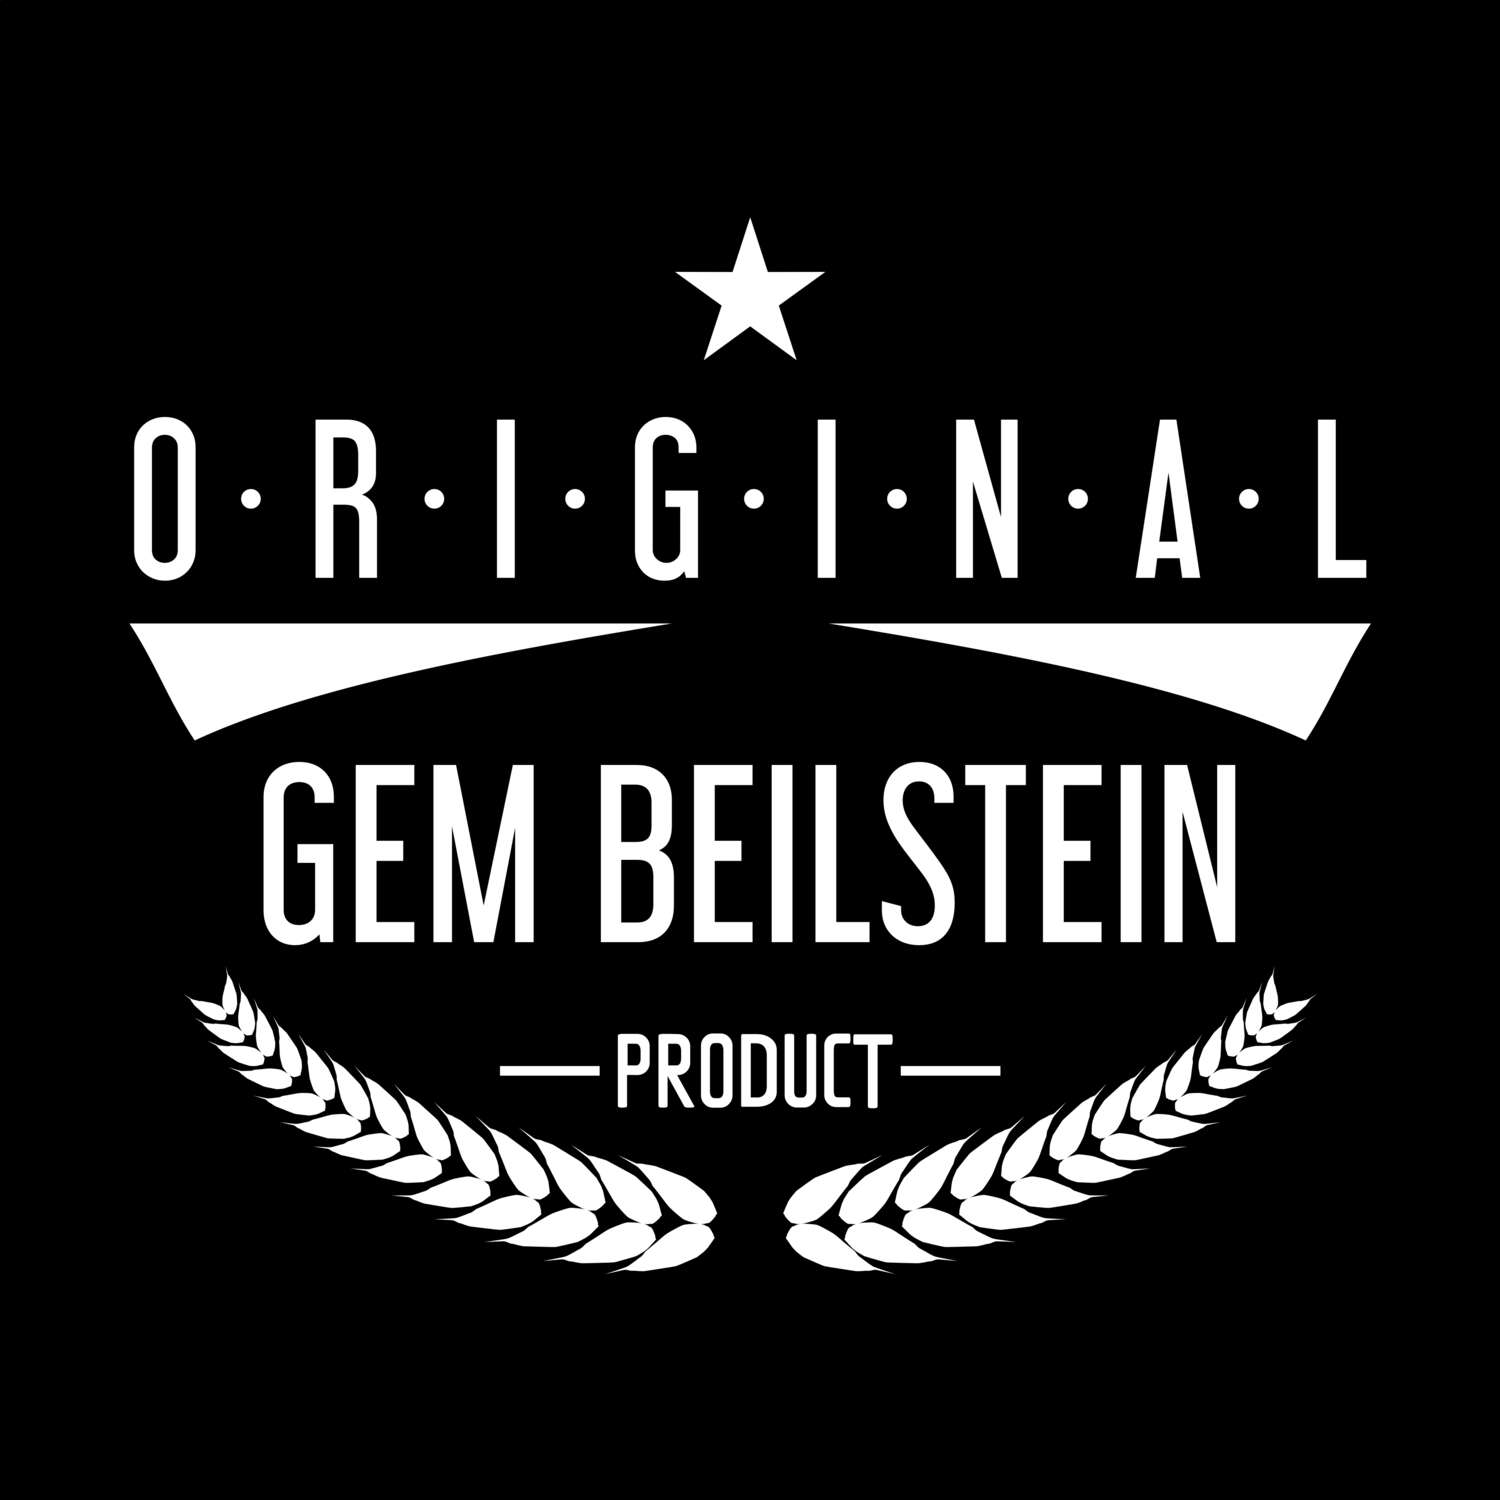 Gem Beilstein T-Shirt »Original Product«